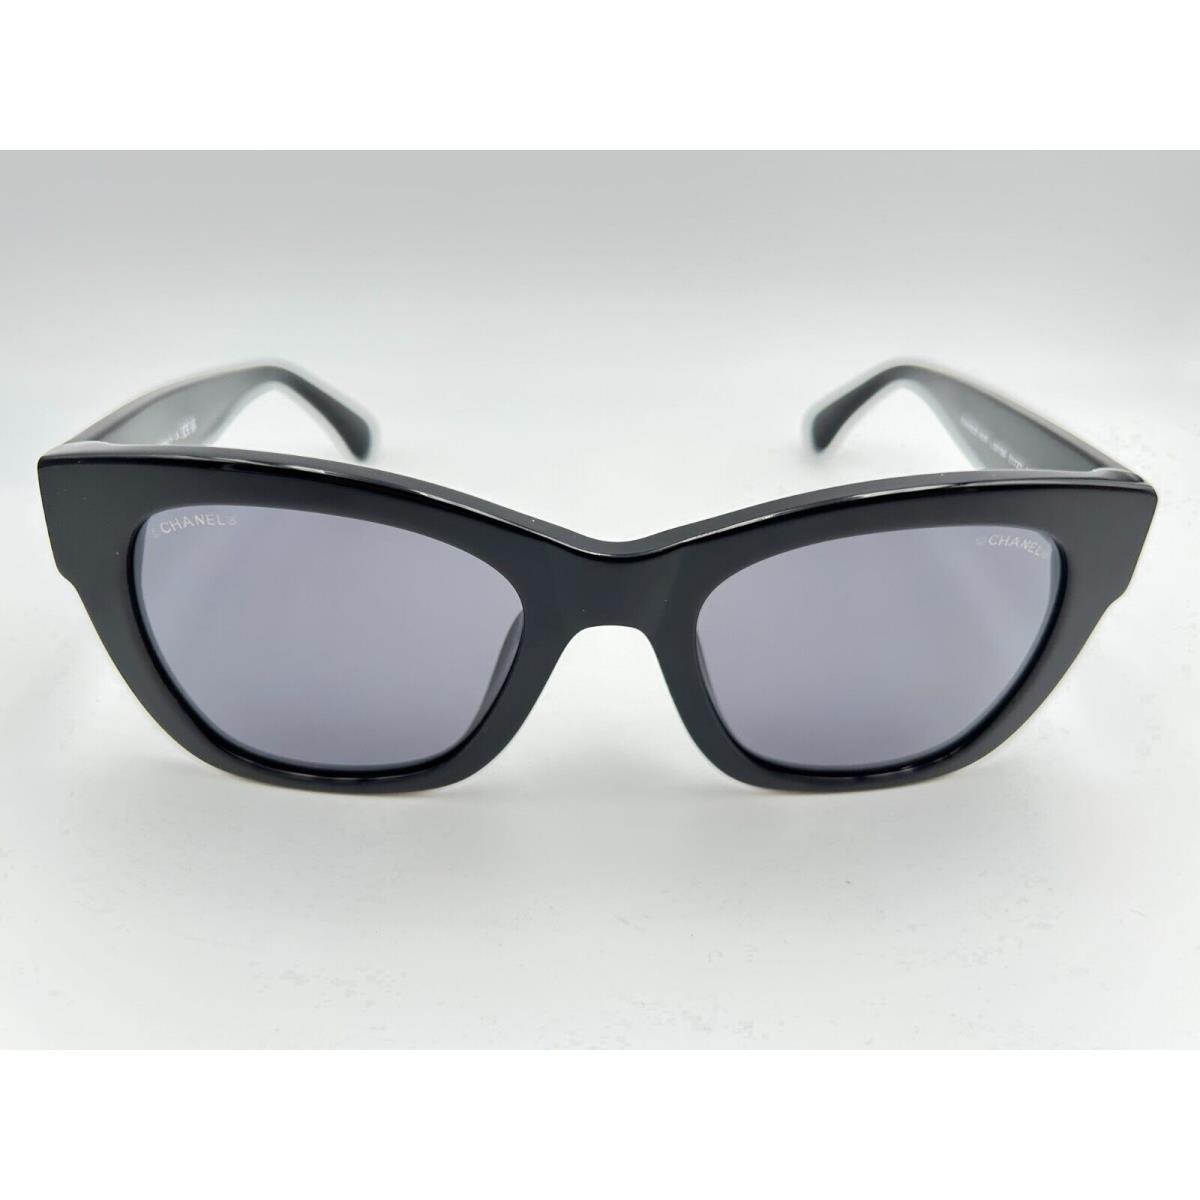 Chanel Sunglasses 5478 c 501/S4 Black Gray Square Heart Logo - Chanel  sunglasses 